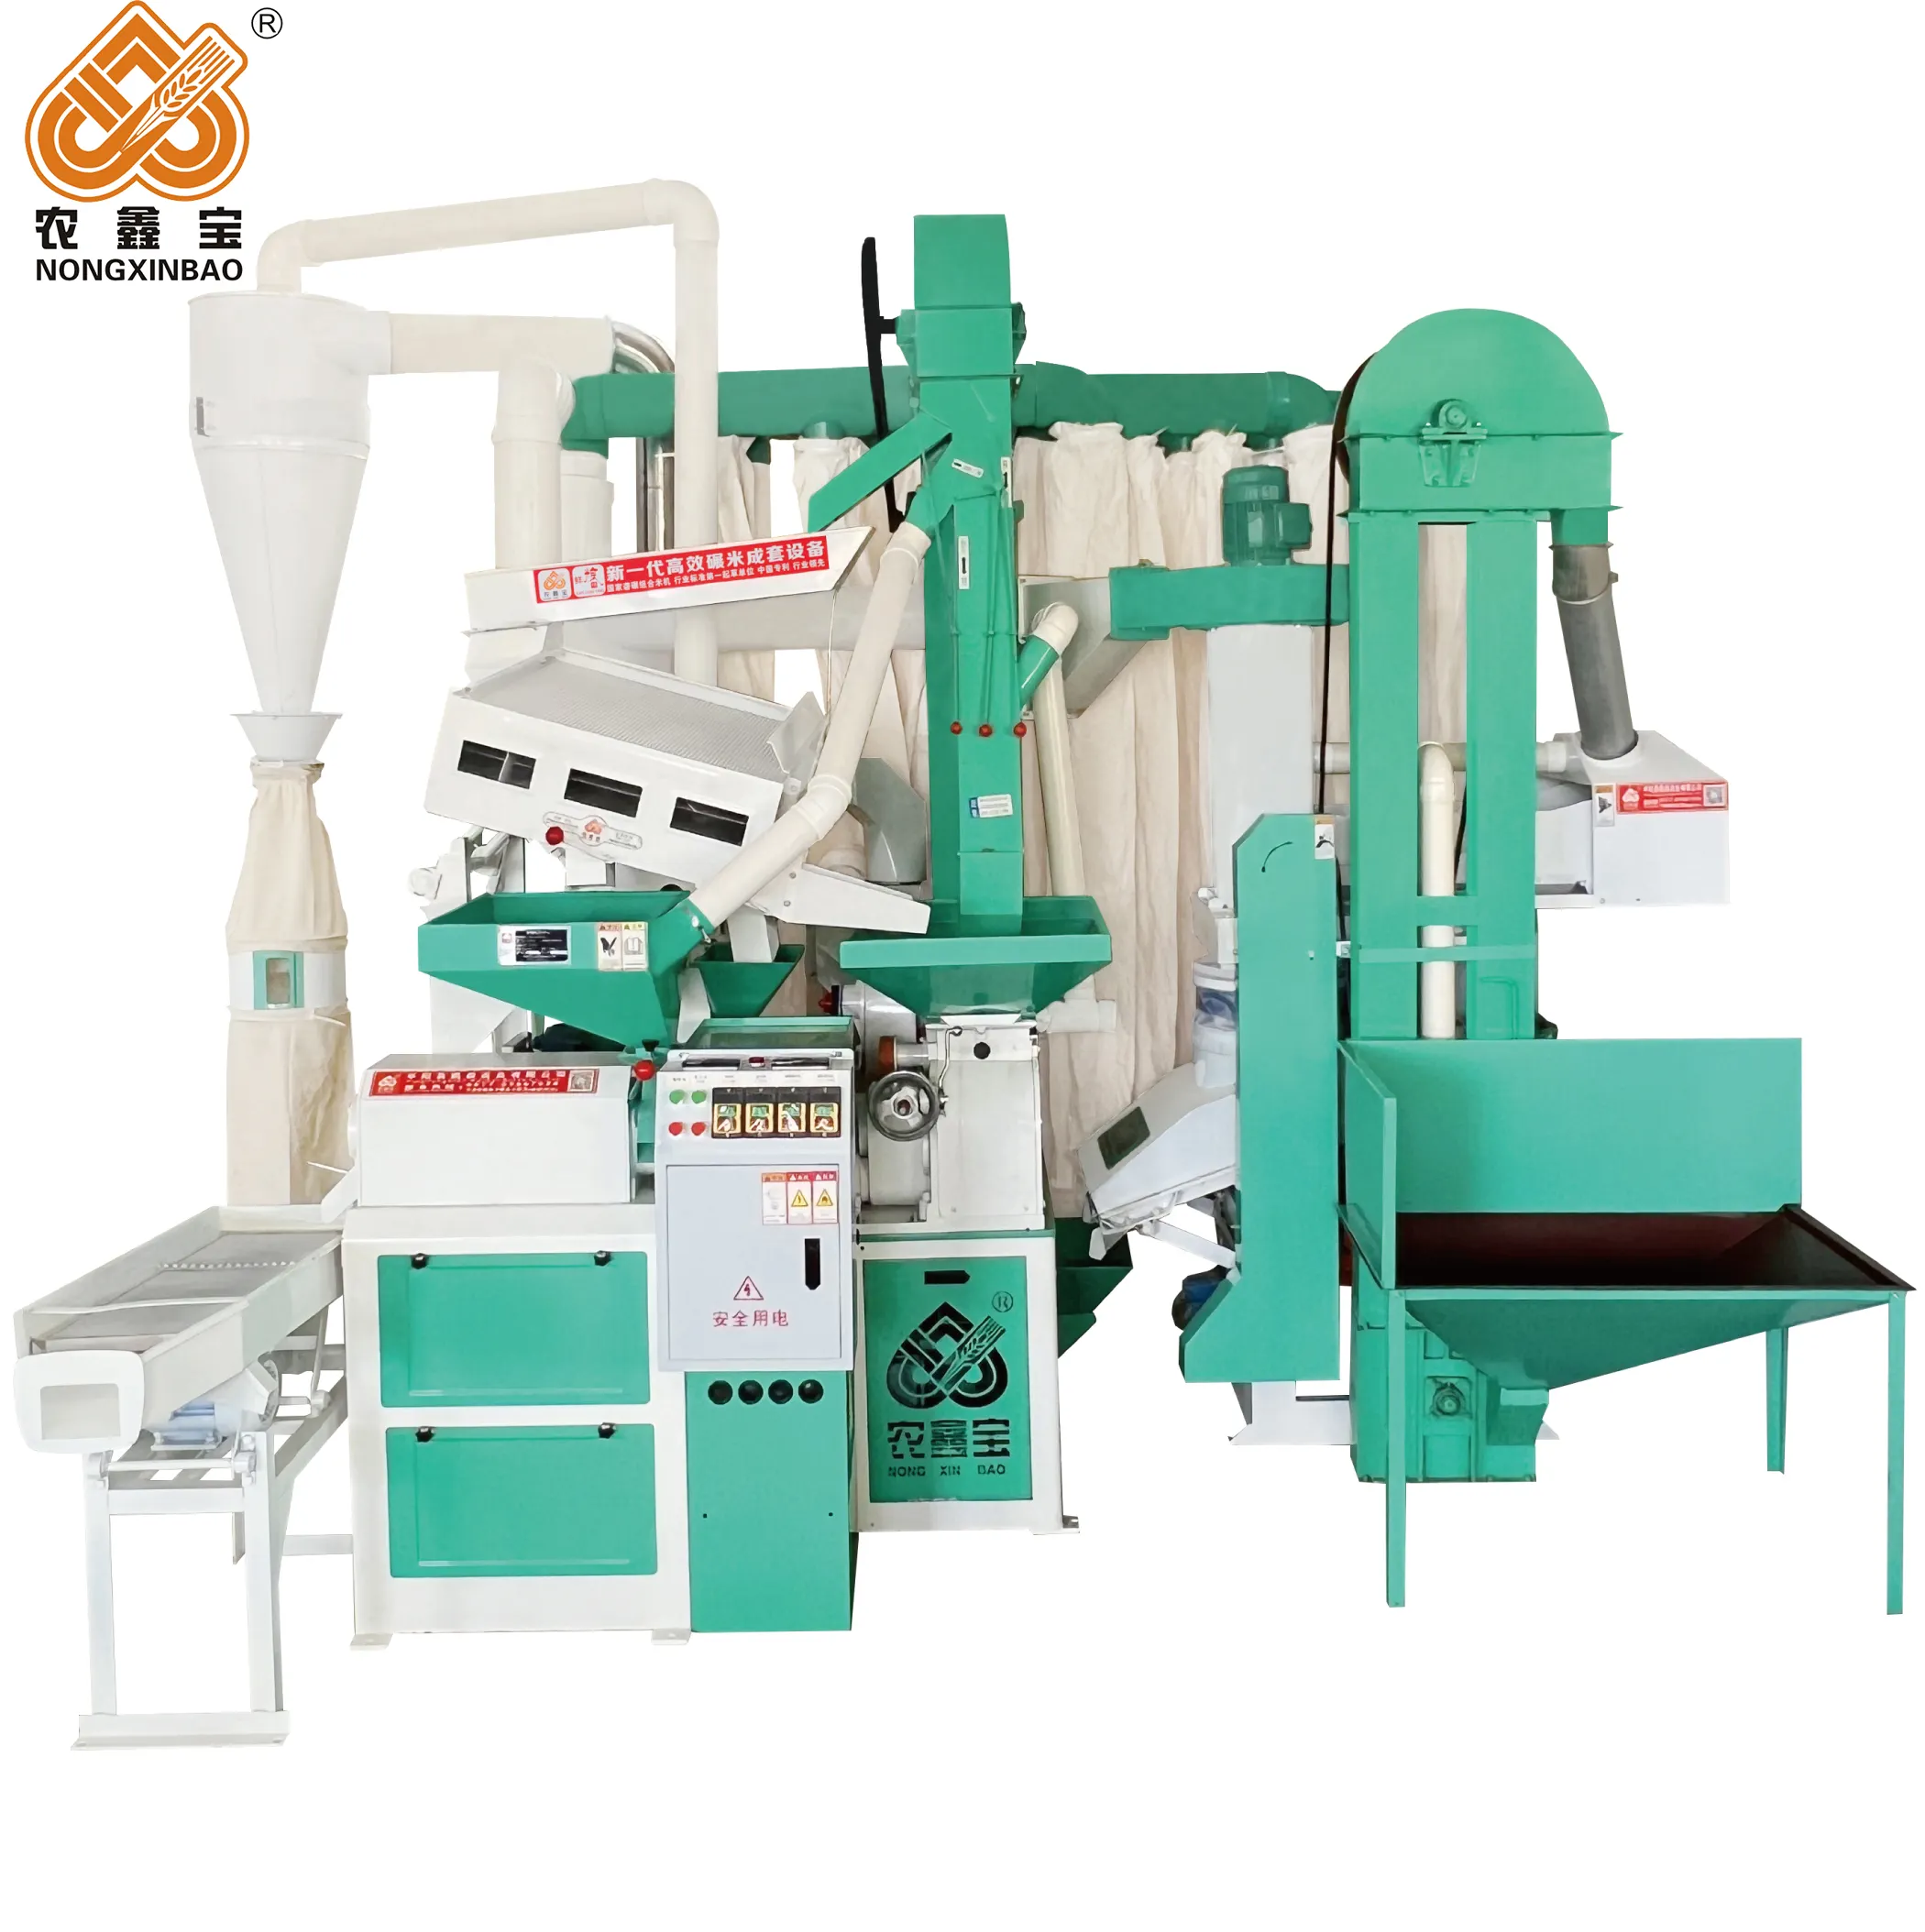 हाई स्पीड चावल मिलिंग मशीन/1300r/मिनट चावल मिल प्लांट/650-800 किग्रा/घंटा सफेद करने वाली चावल मशीन